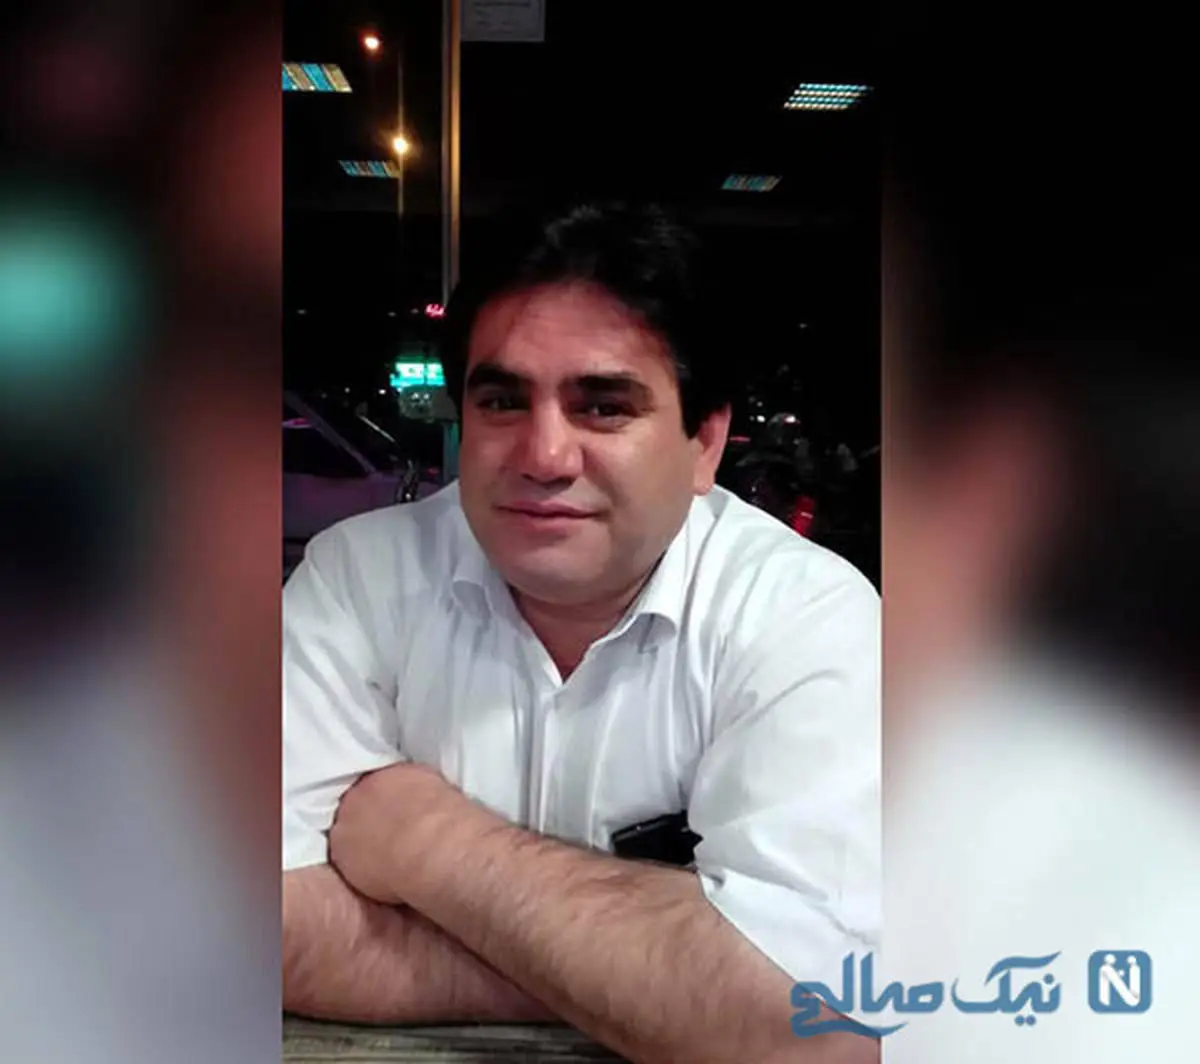 پزشک سرشناس تبریزی مقابل چشمان همسرش به طرز فجیعی به قتل رسید + جزئیات